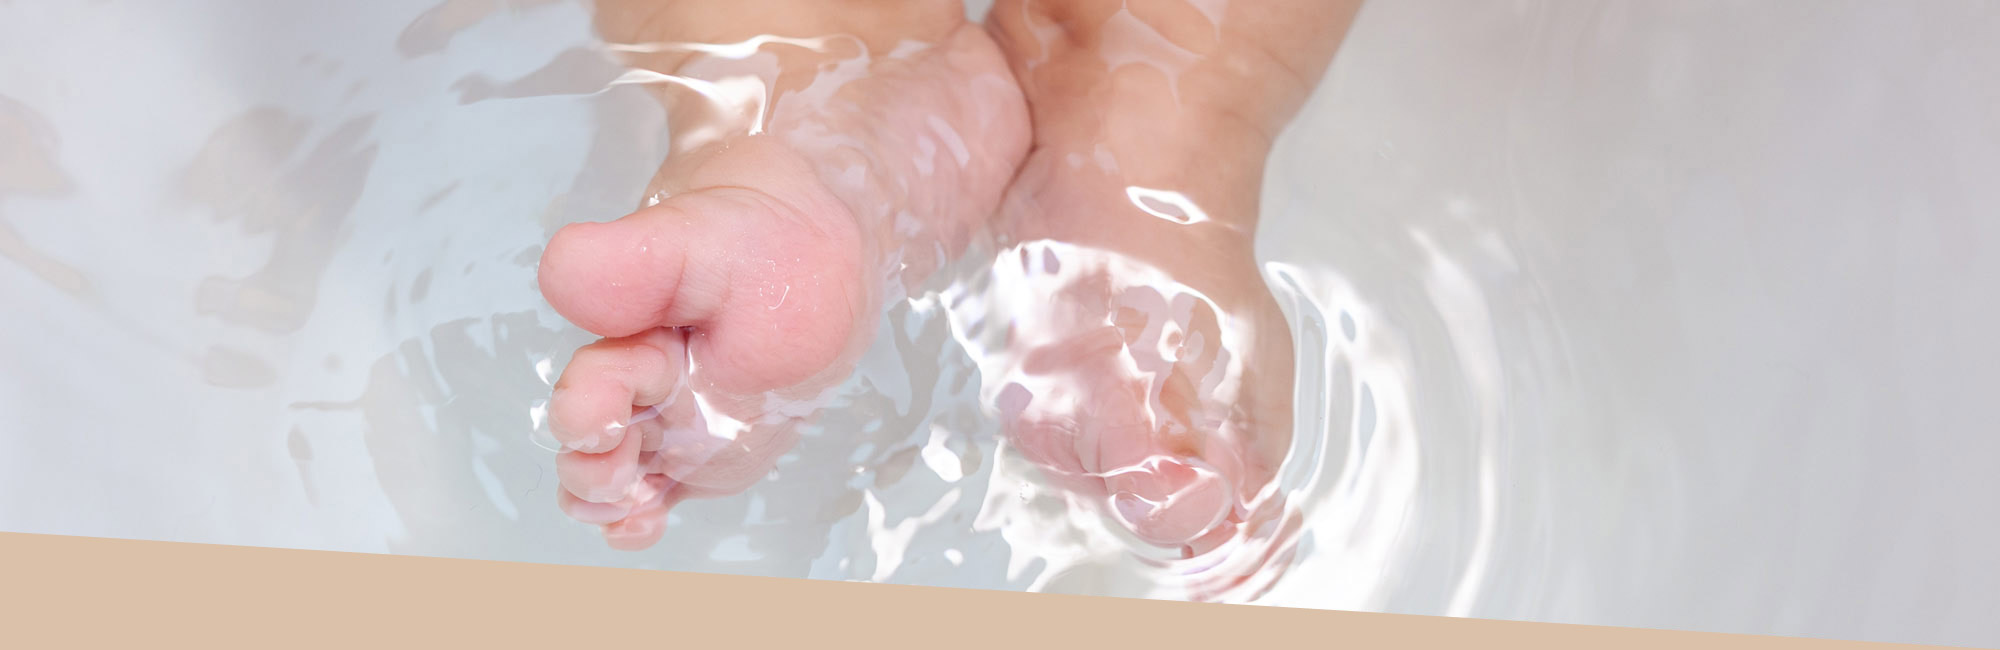 Le thalasso bain bébé